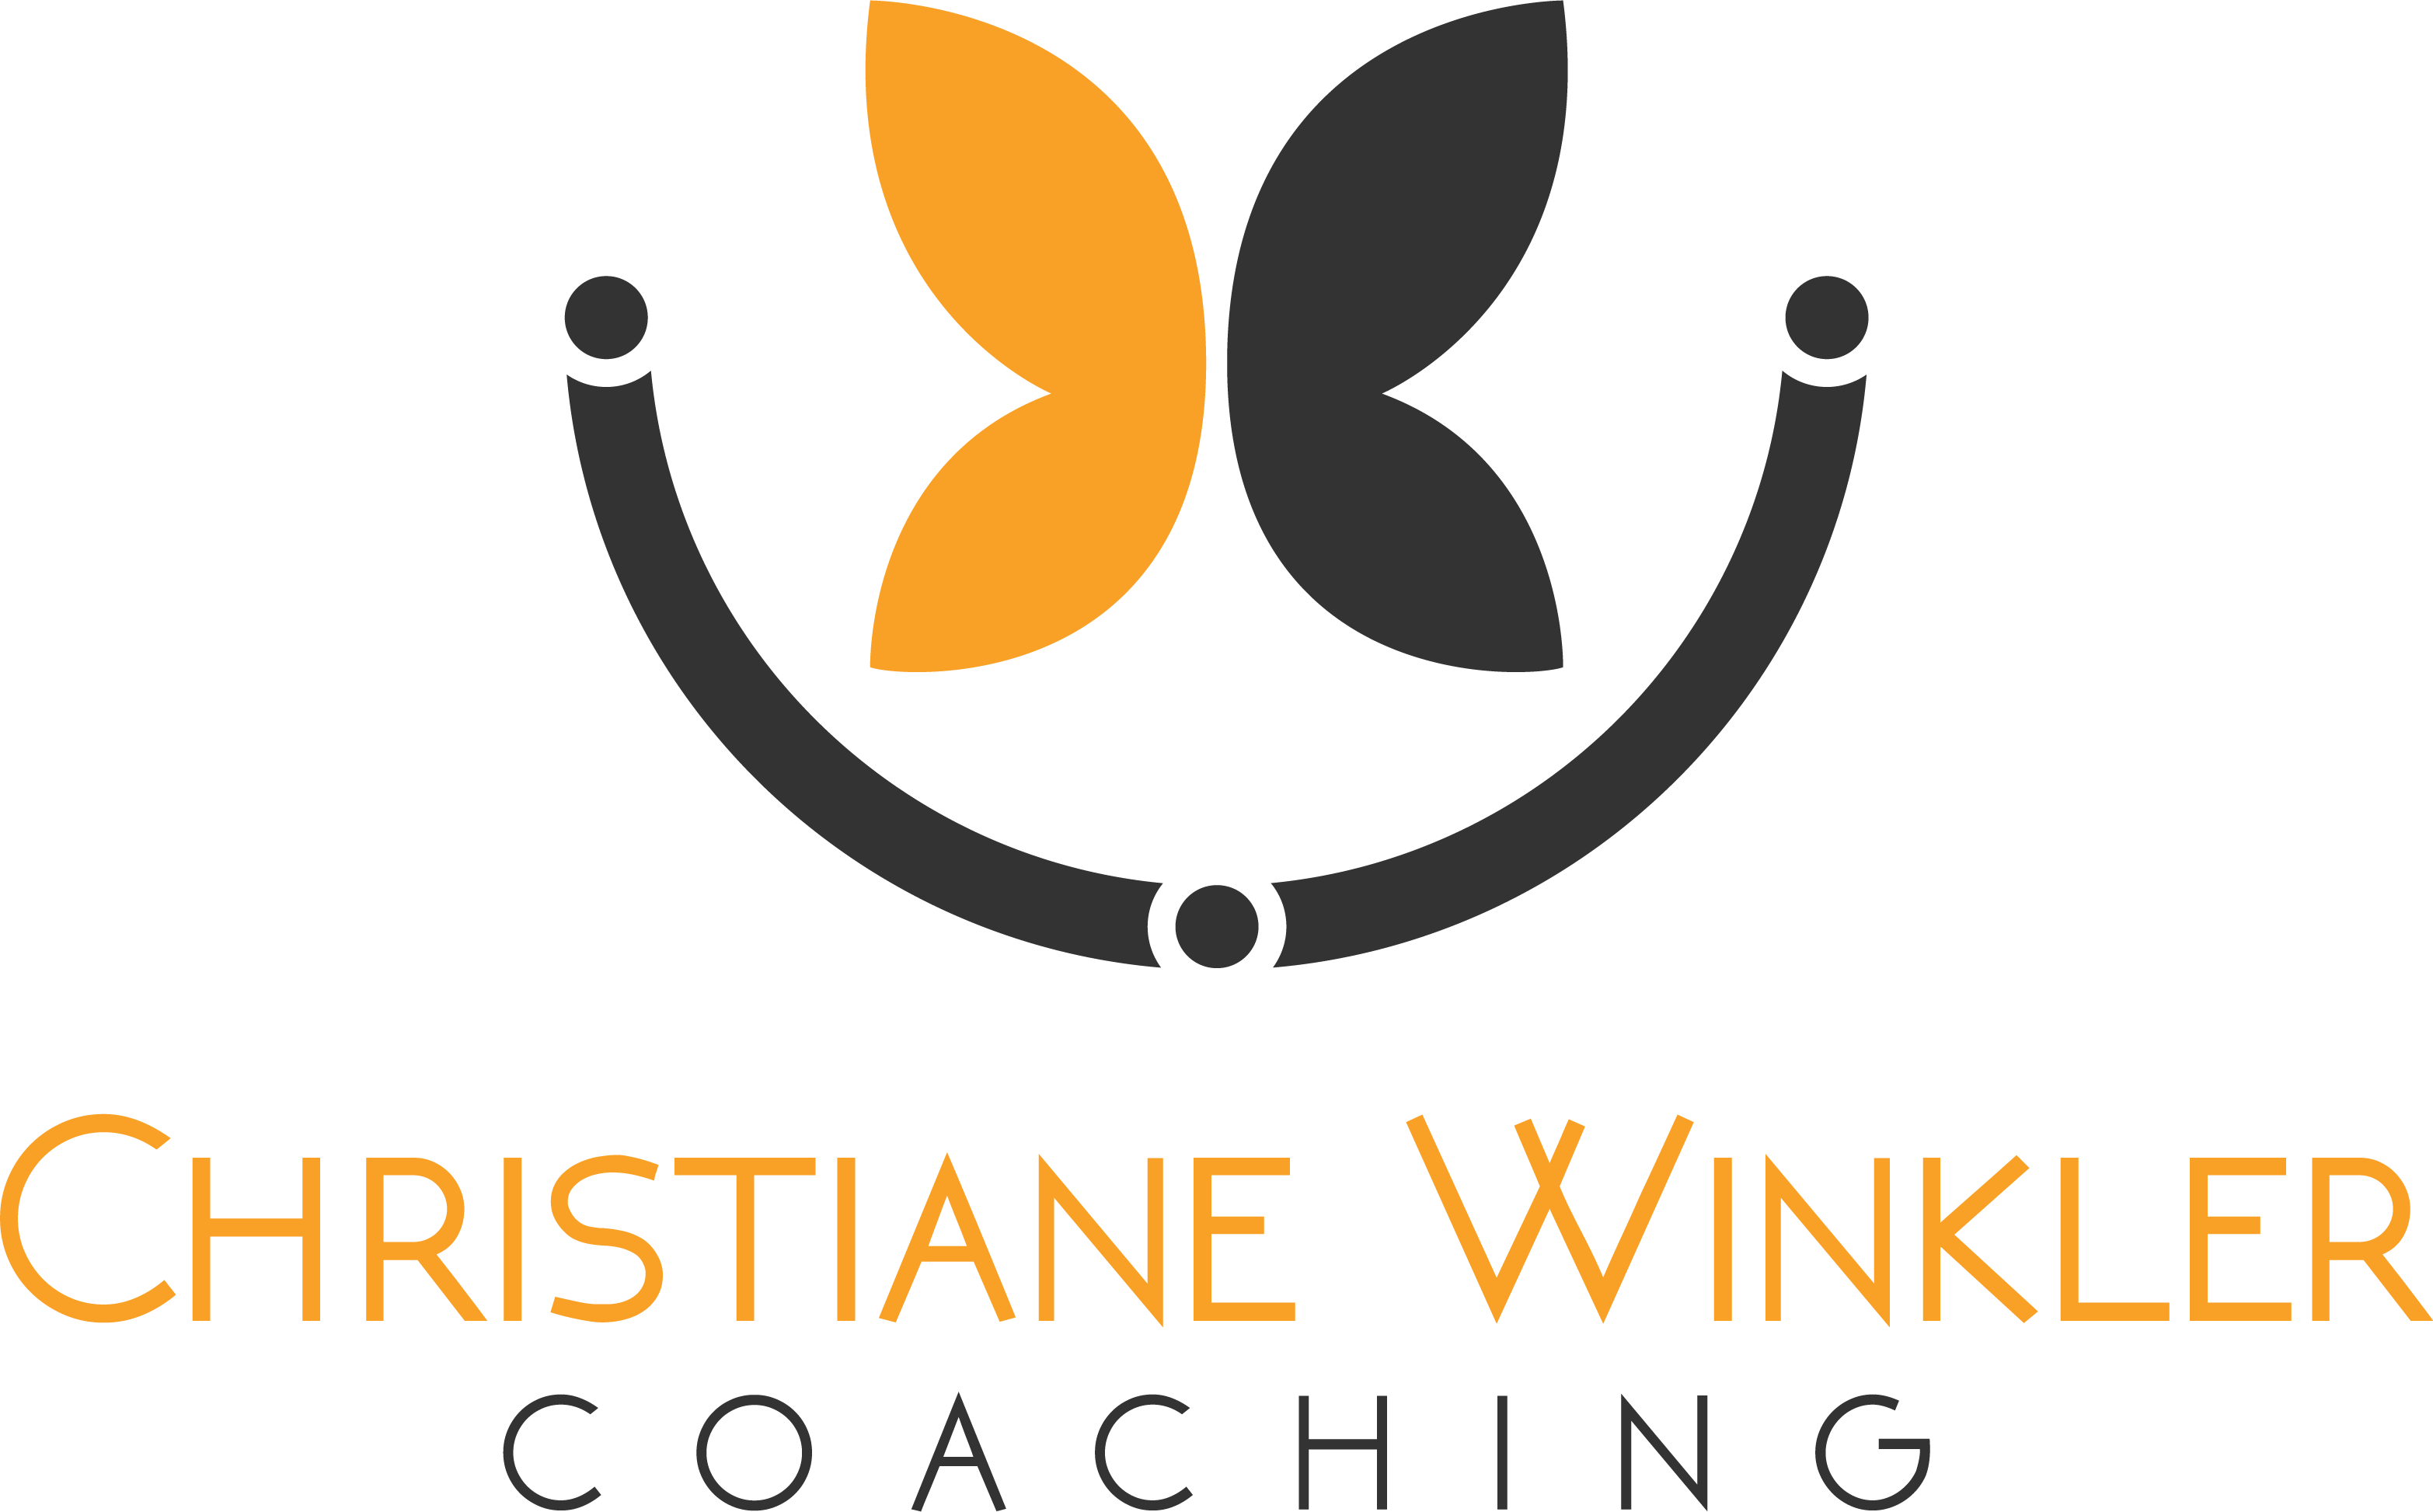 Christiane Winkler Coaching   